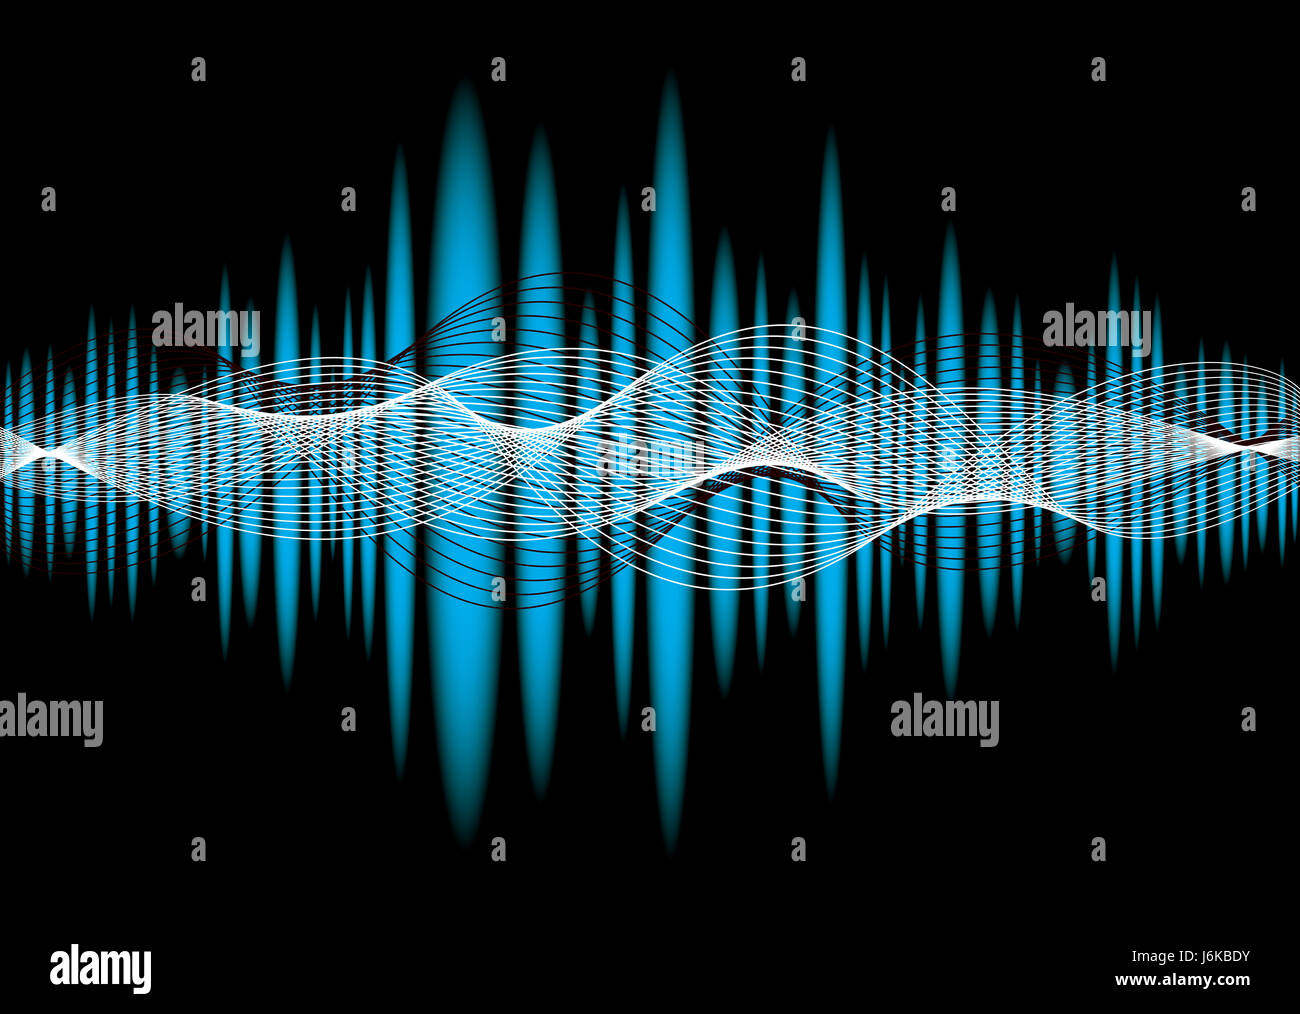 Ecualizador de sonido de música abstracta telón de fondo gráfico